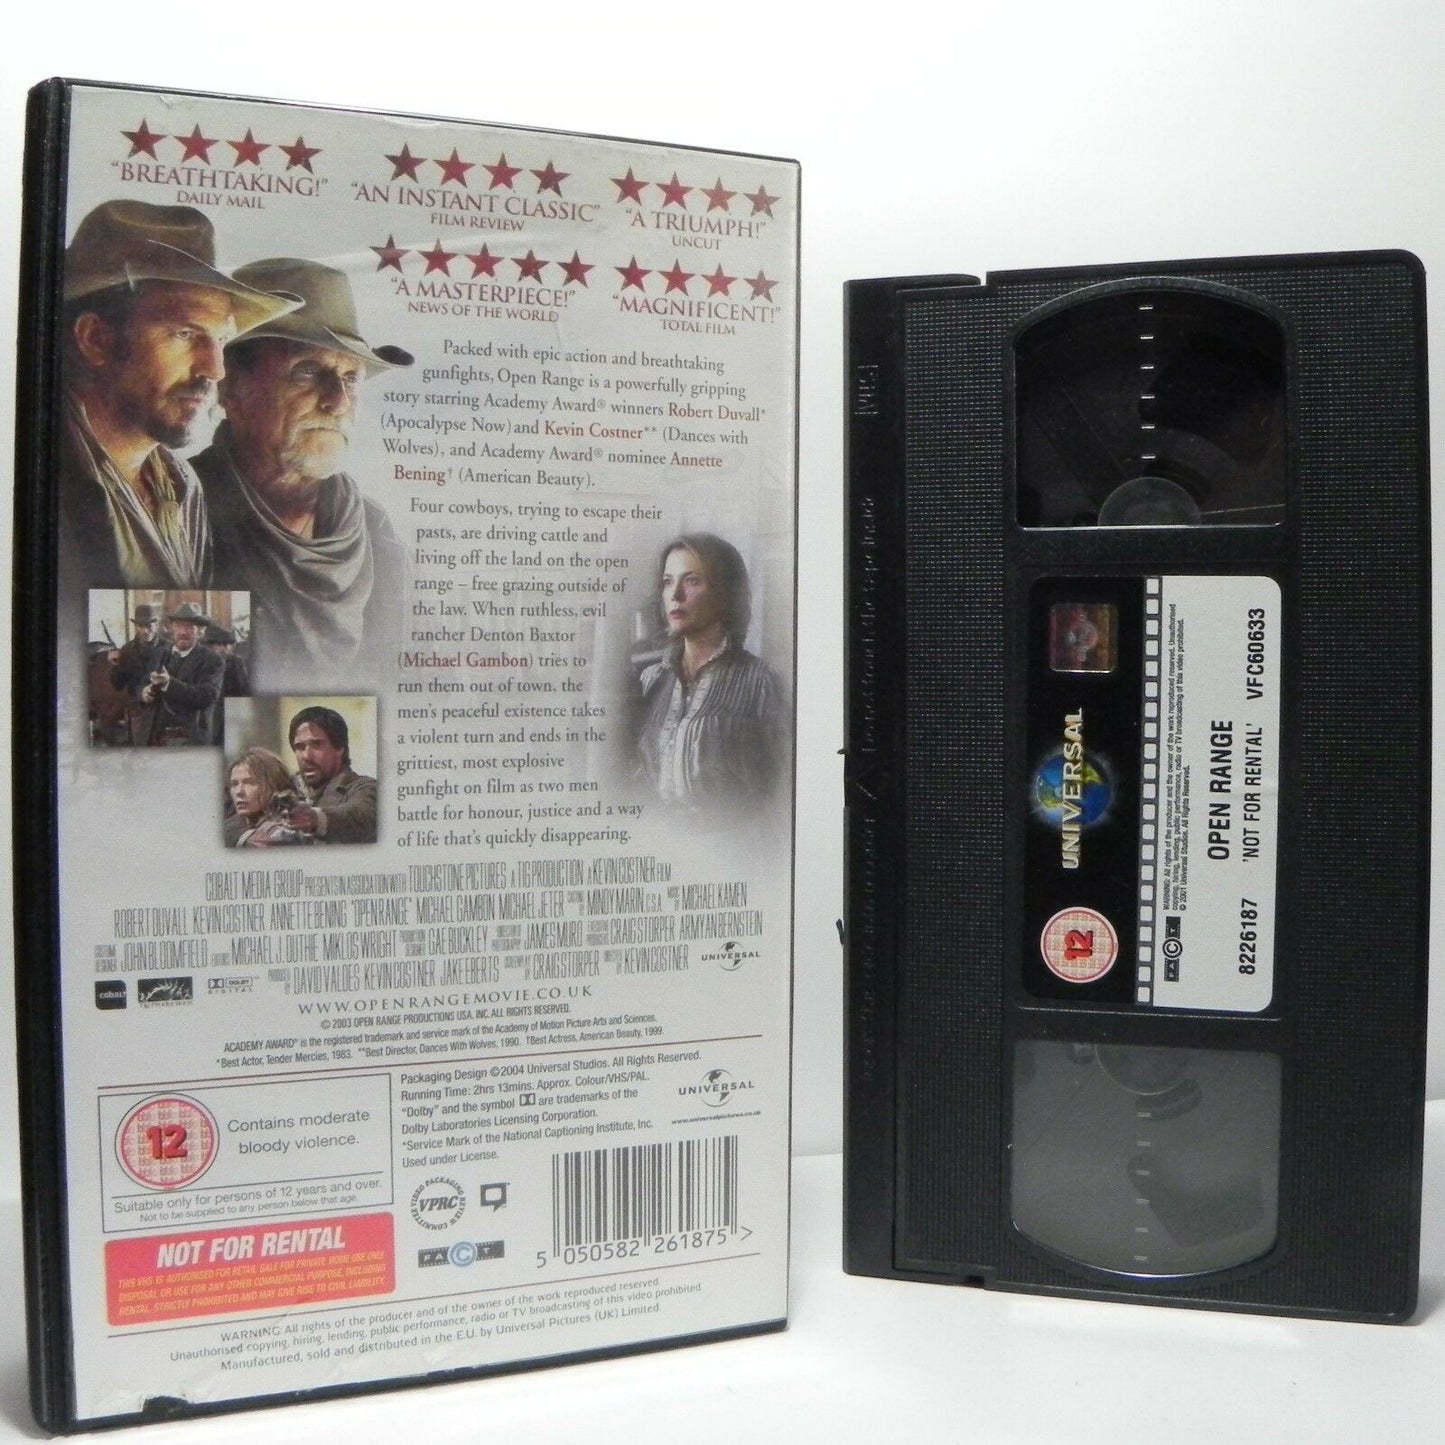 Open Range: By K.Costner - Western (2003) - Robert Duvall/Annette Bening - VHS-